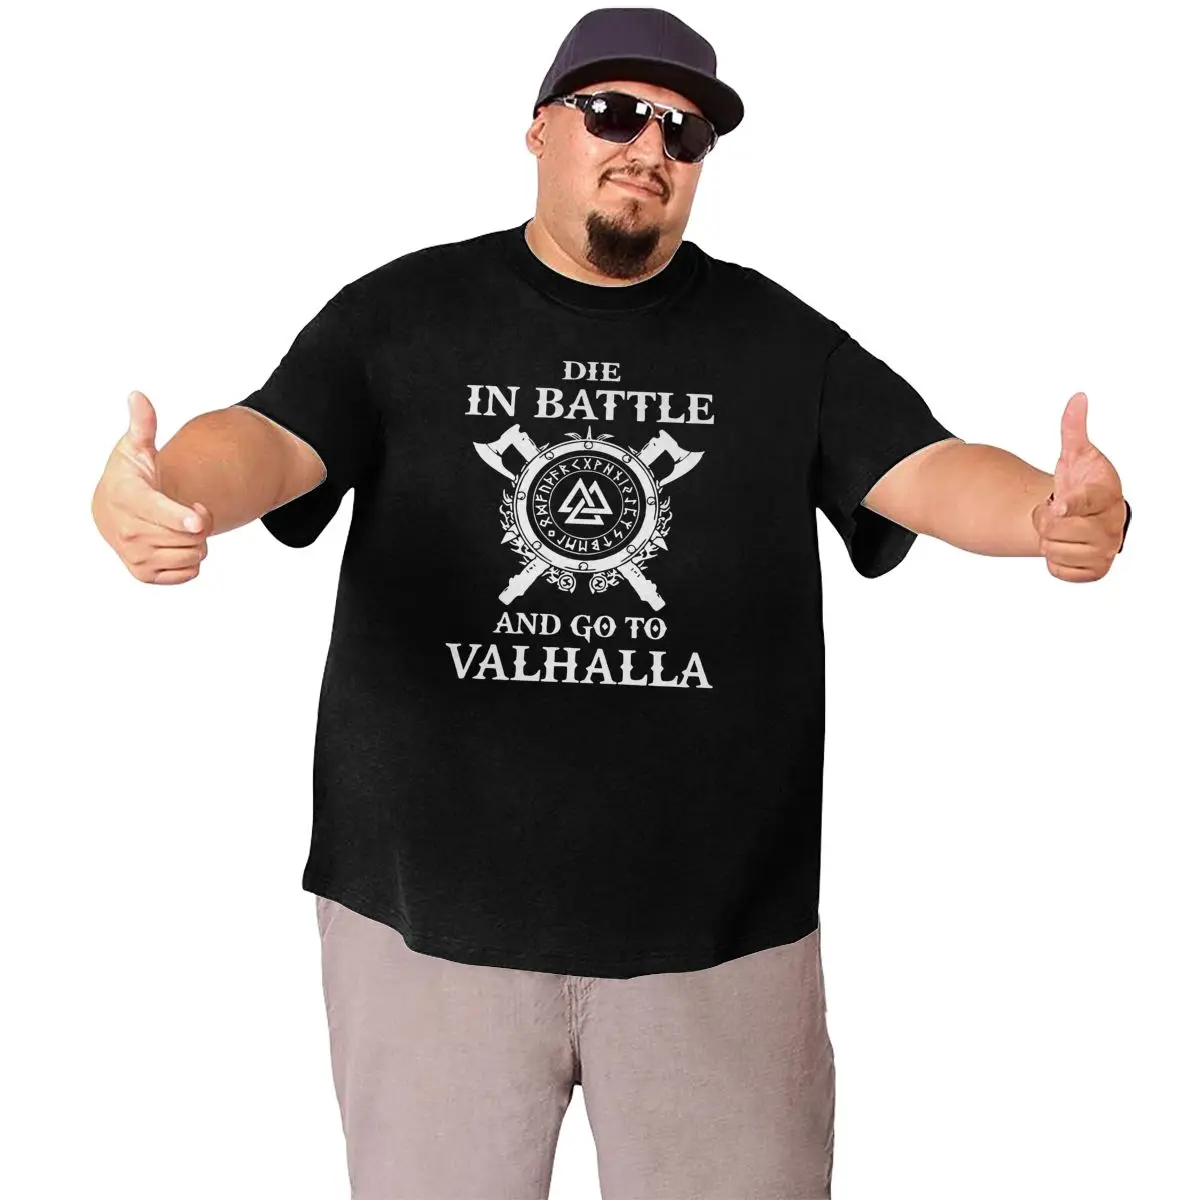 Мужская хлопковая футболка Odin с викингами надписью Die In Battle Go To Valhalla большого